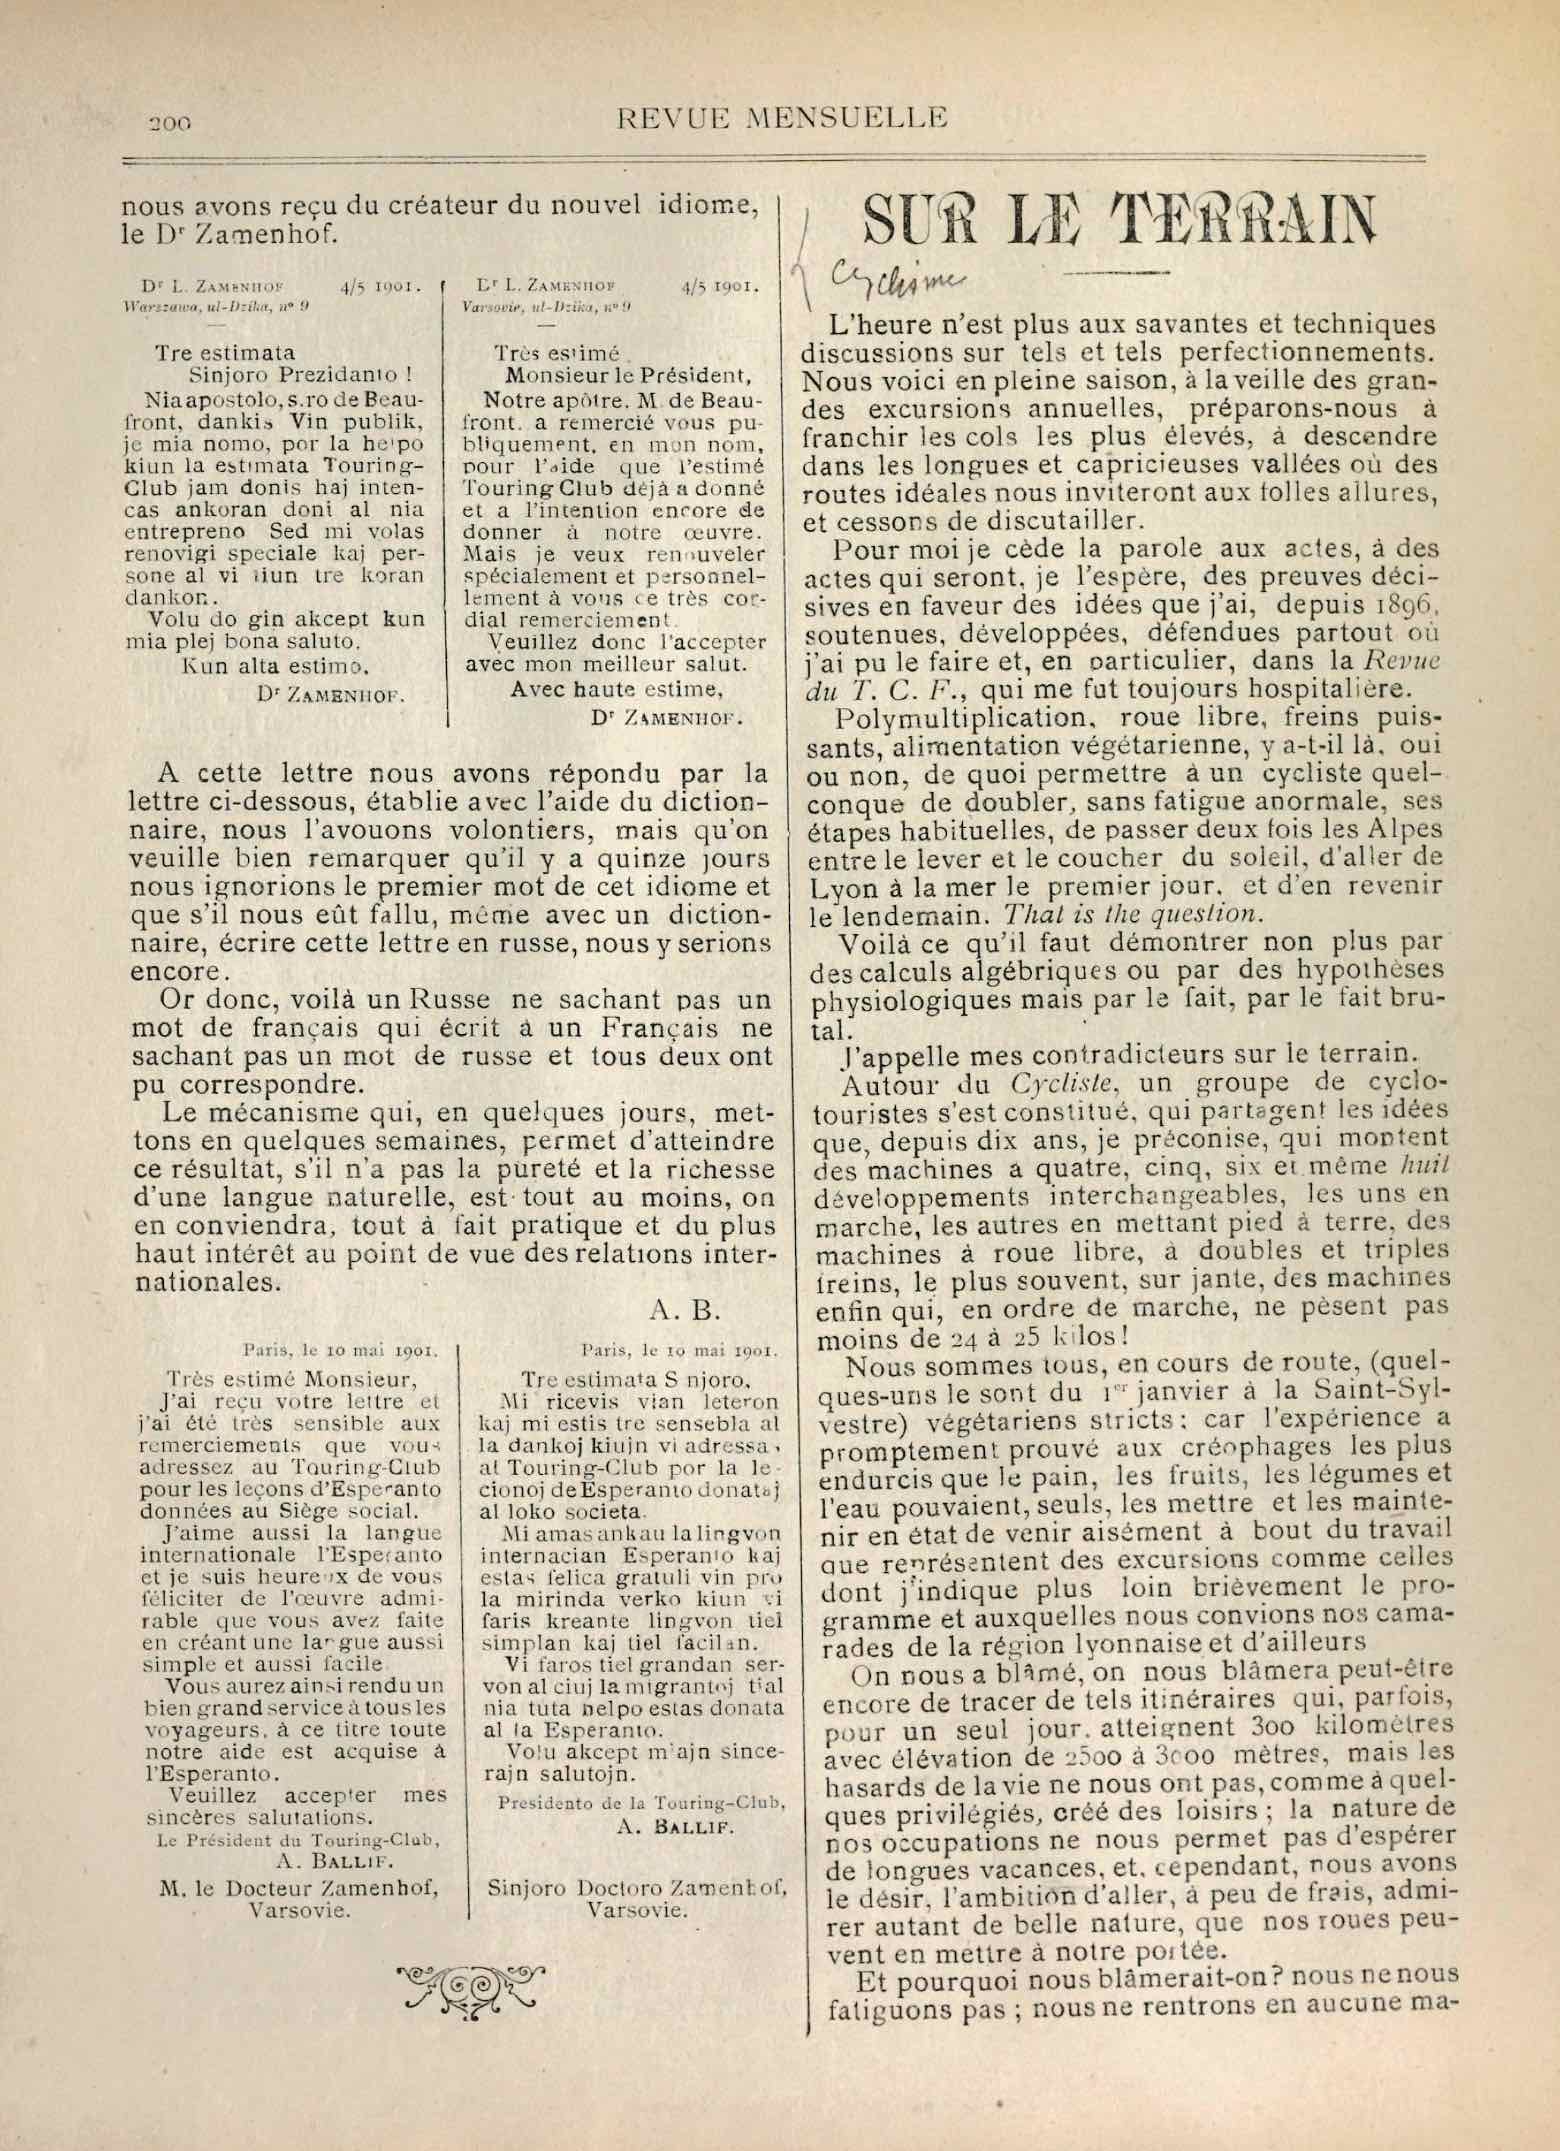 T.C.F. Revue Mensuelle May 1901 - Sur le terrain scan 1 main image